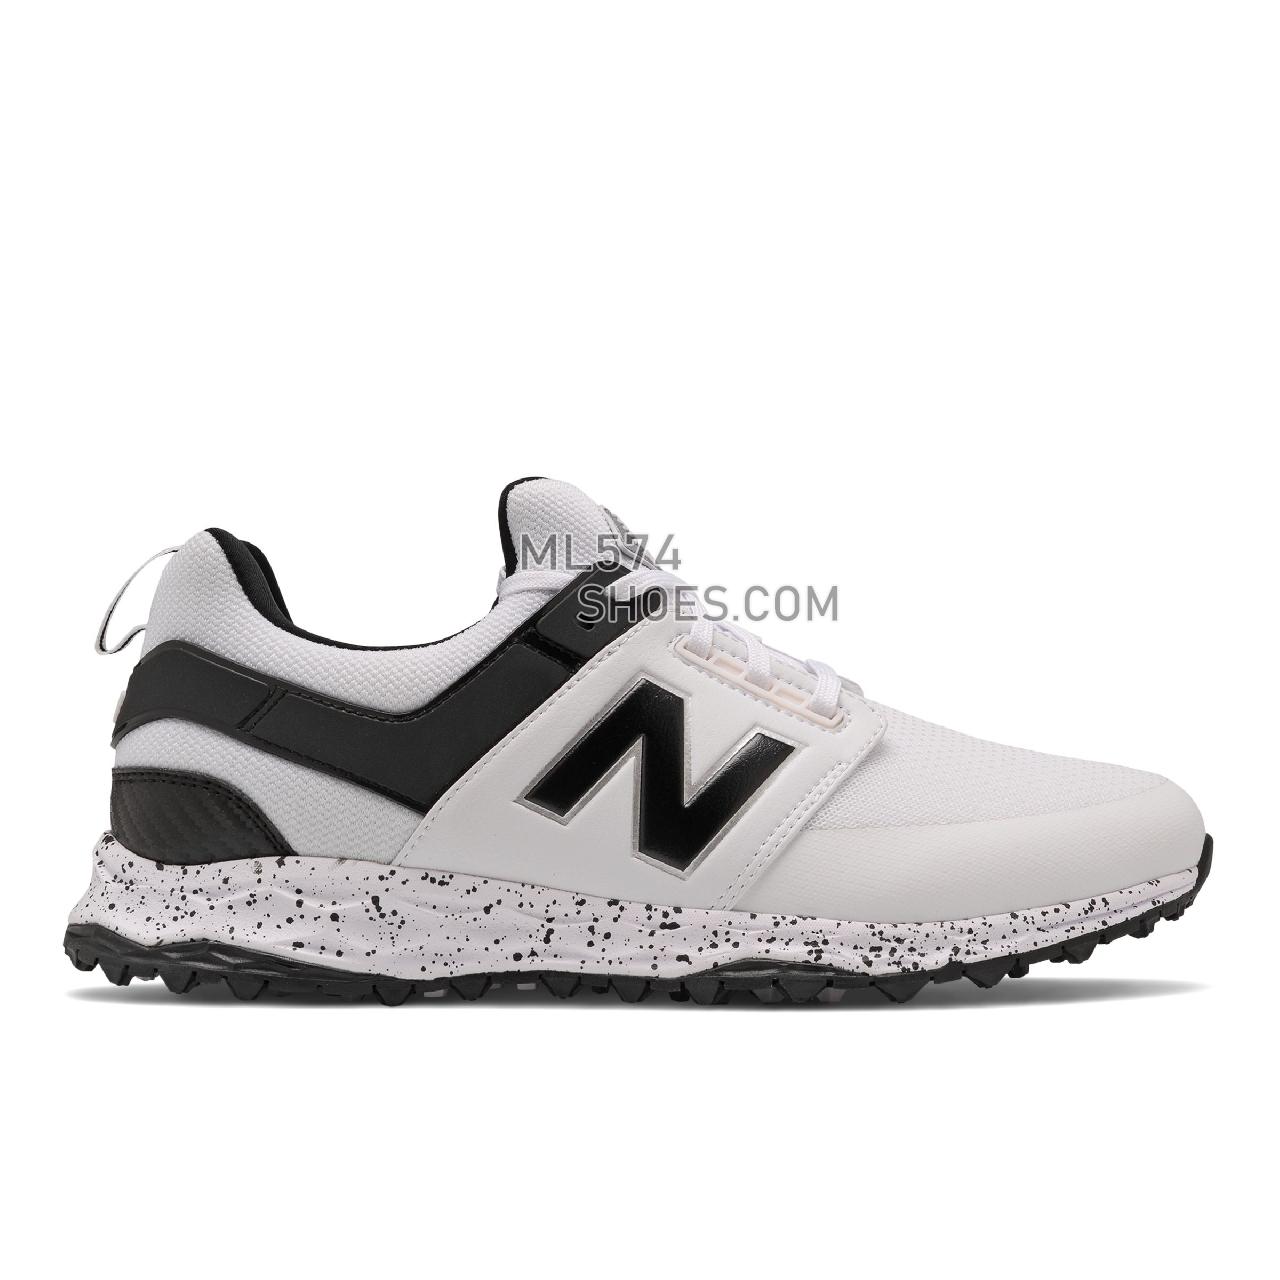 New Balance Fresh Foam Links - Men's Golf - White - NBG4000WK